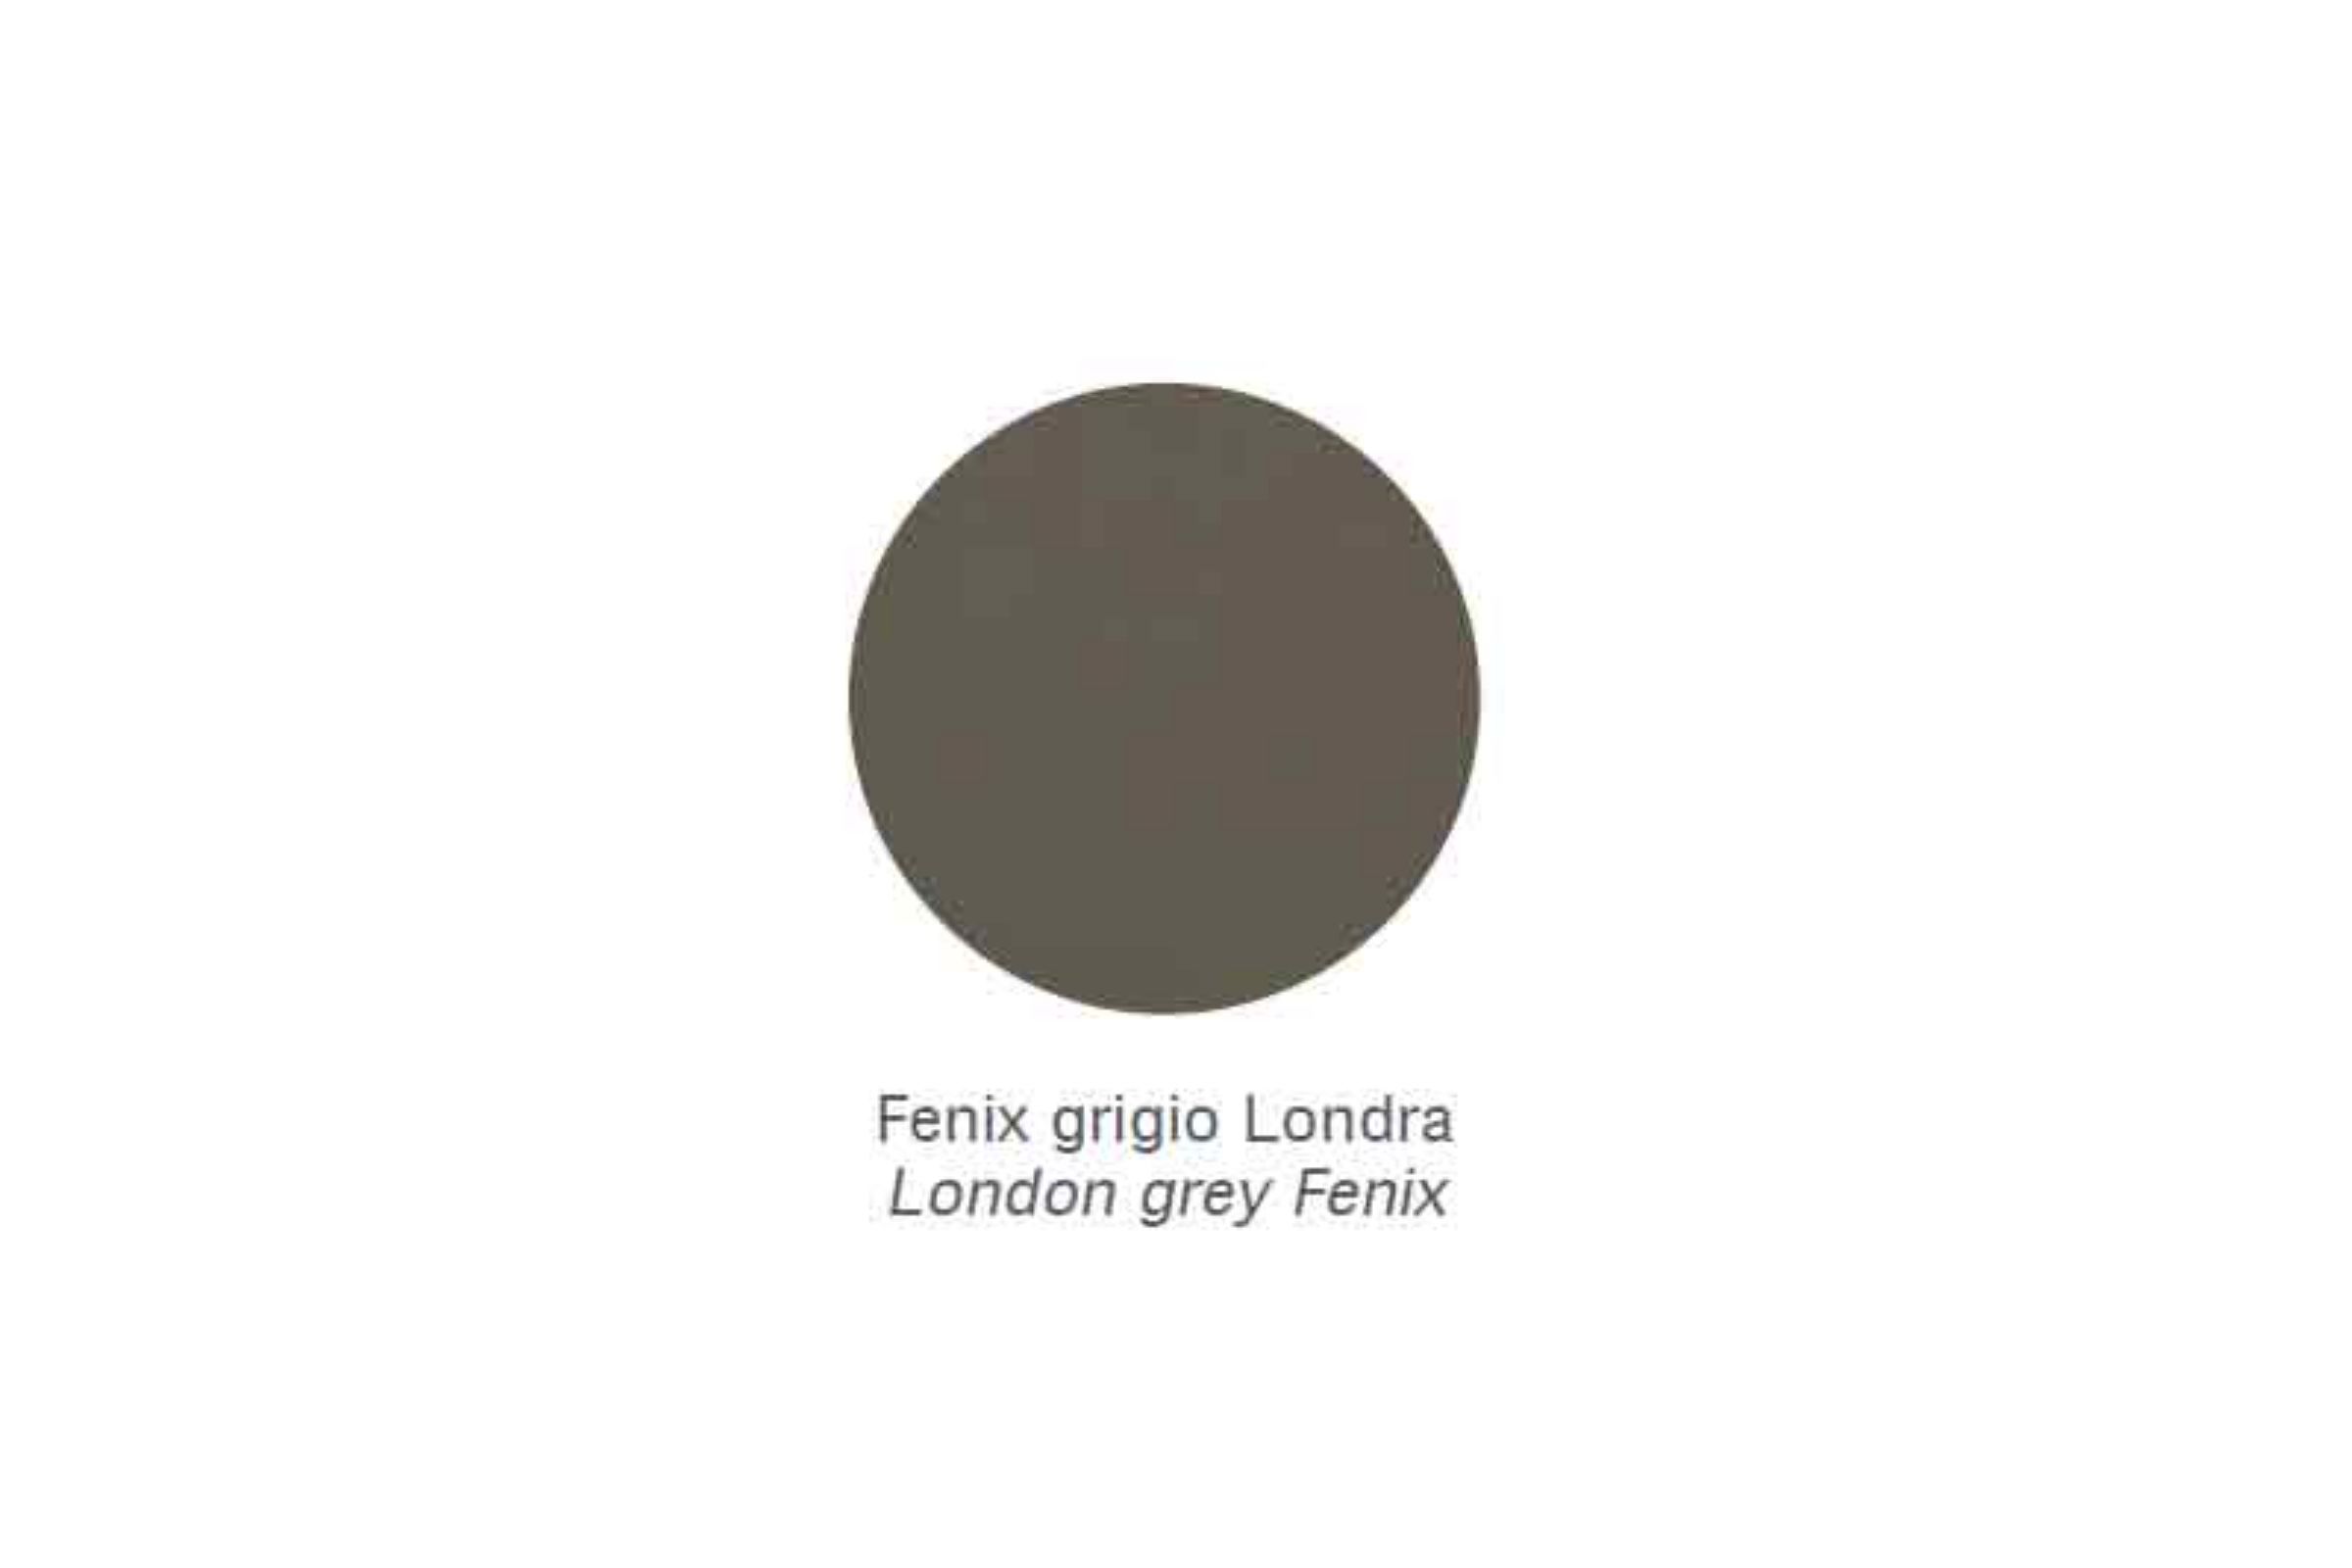 Porta spazzolini appoggio in metallo Zen - Porta spazzolini appoggio in metallo Zen Fenix grigio Londra